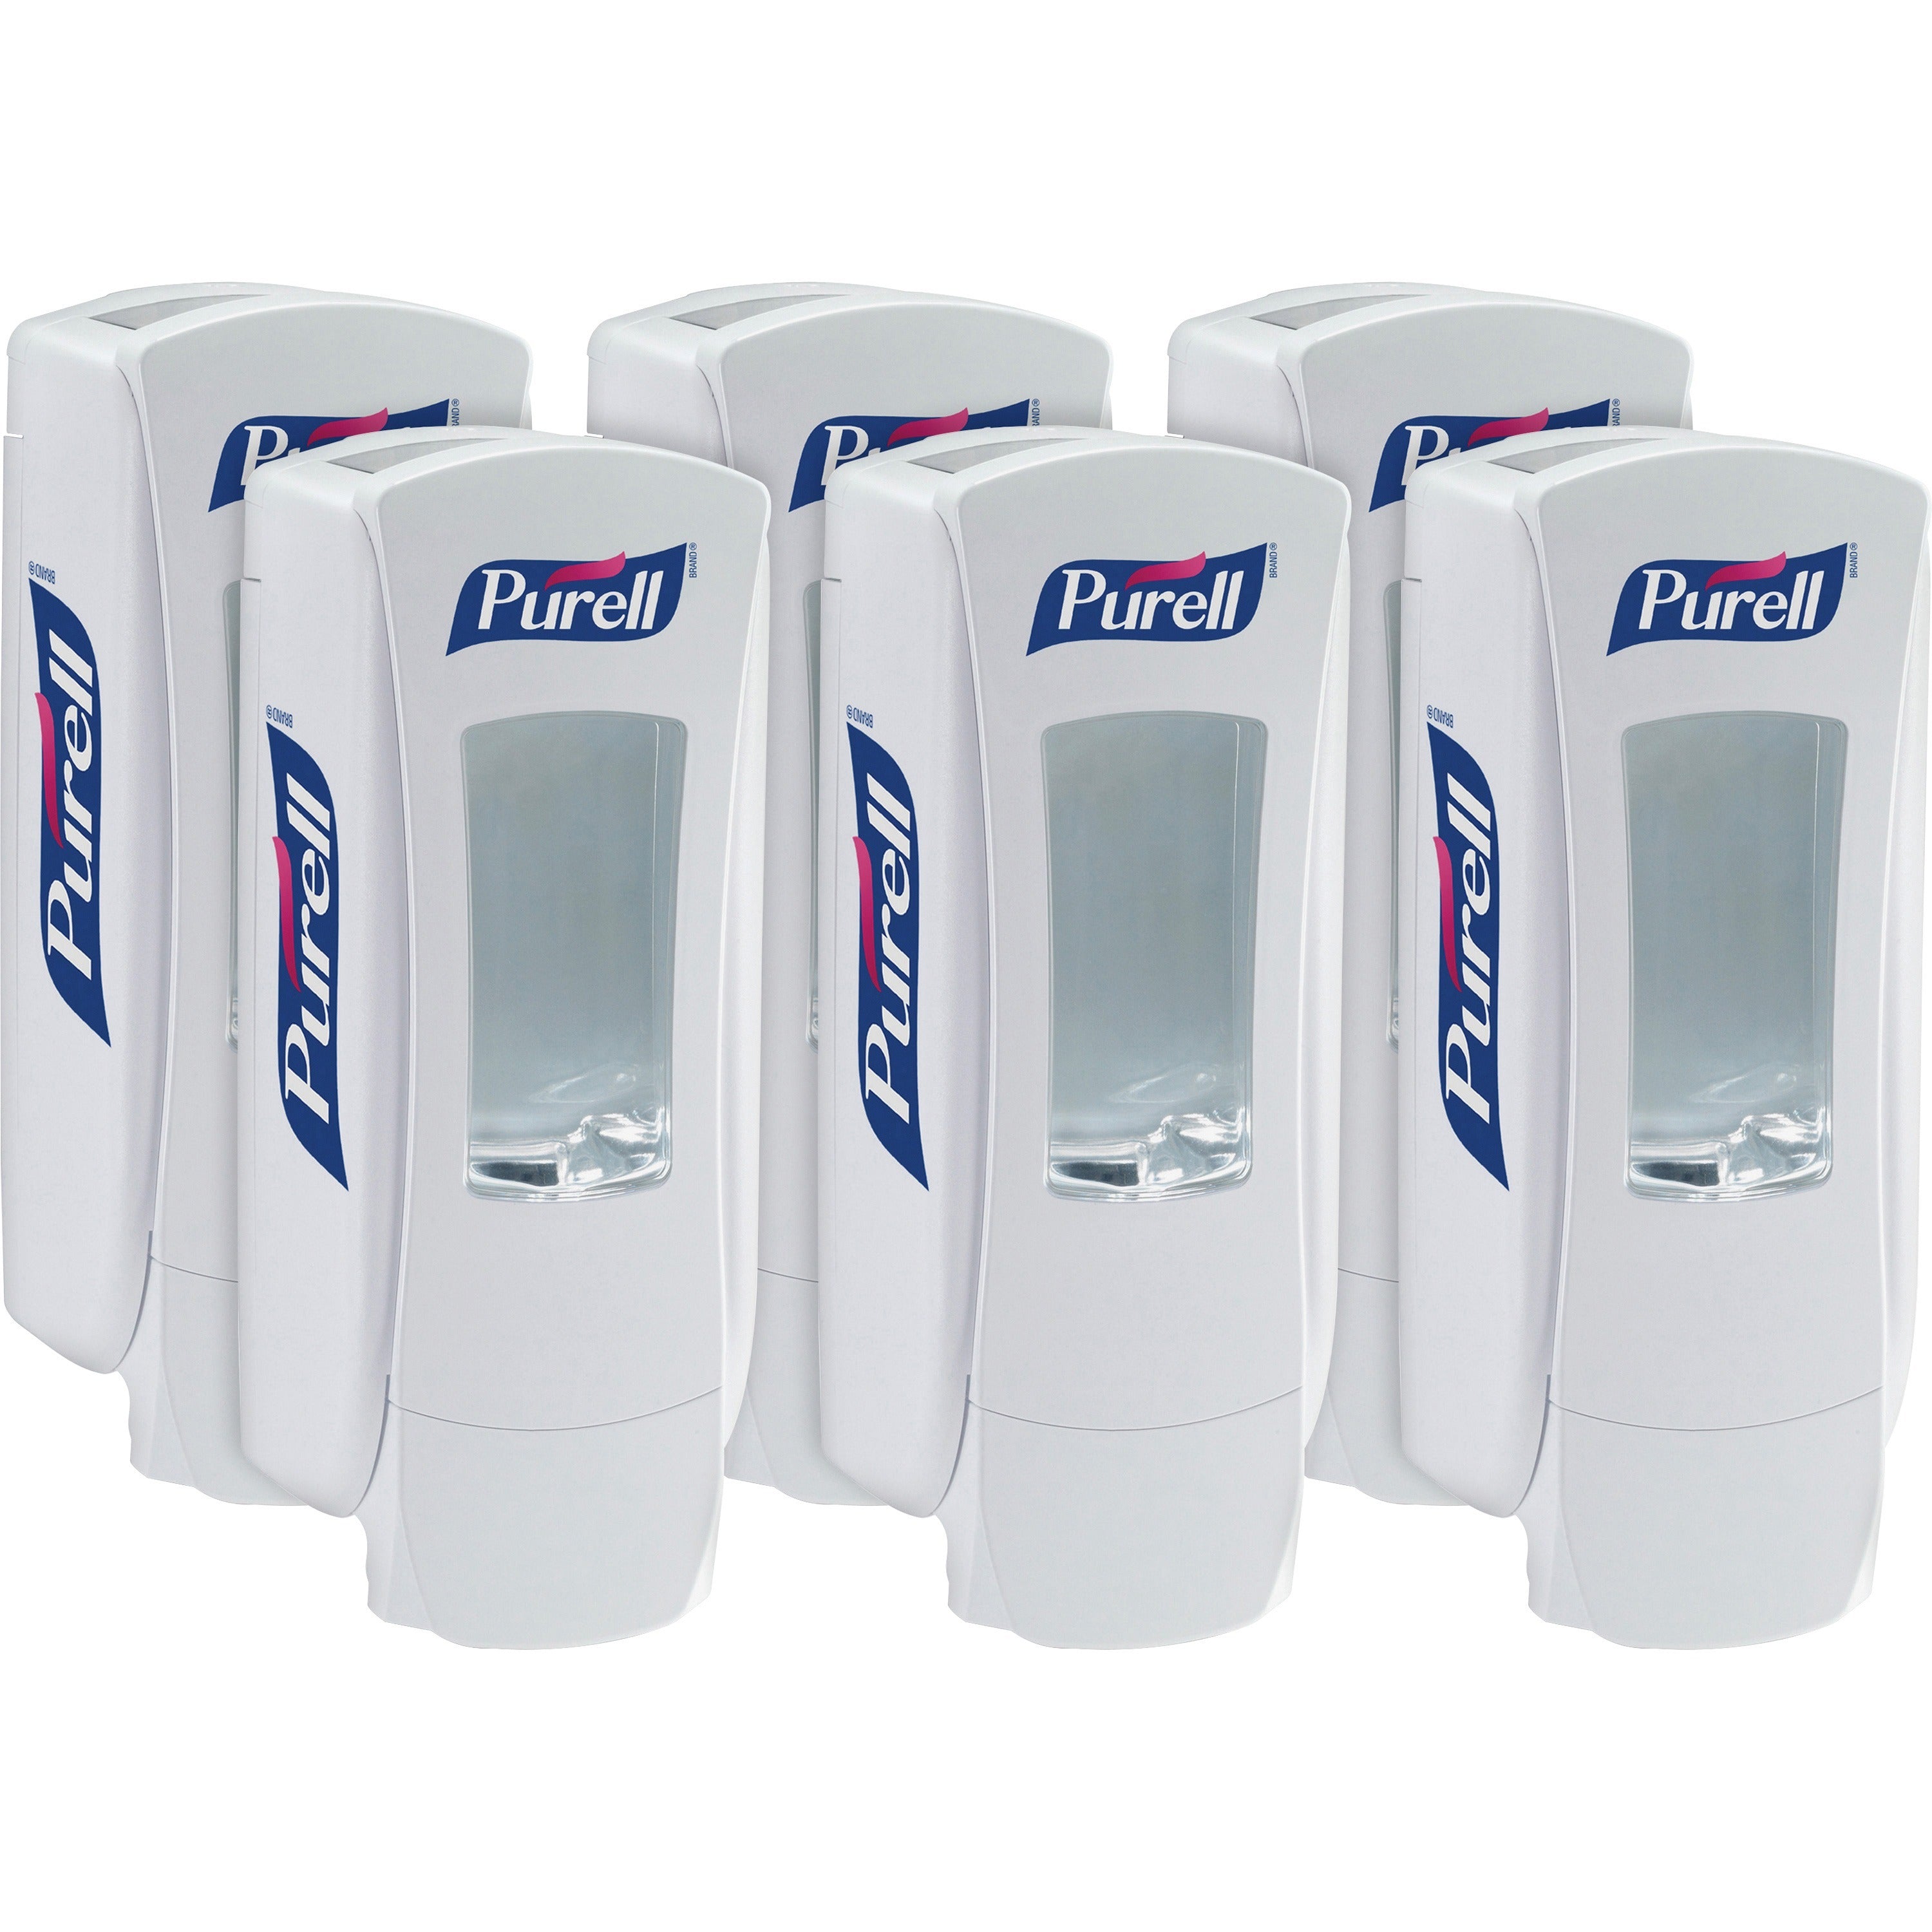 PURELL ADX-12 Dispenser - Manual - 1.27 quart Capacity - White - 6 / Carton - 